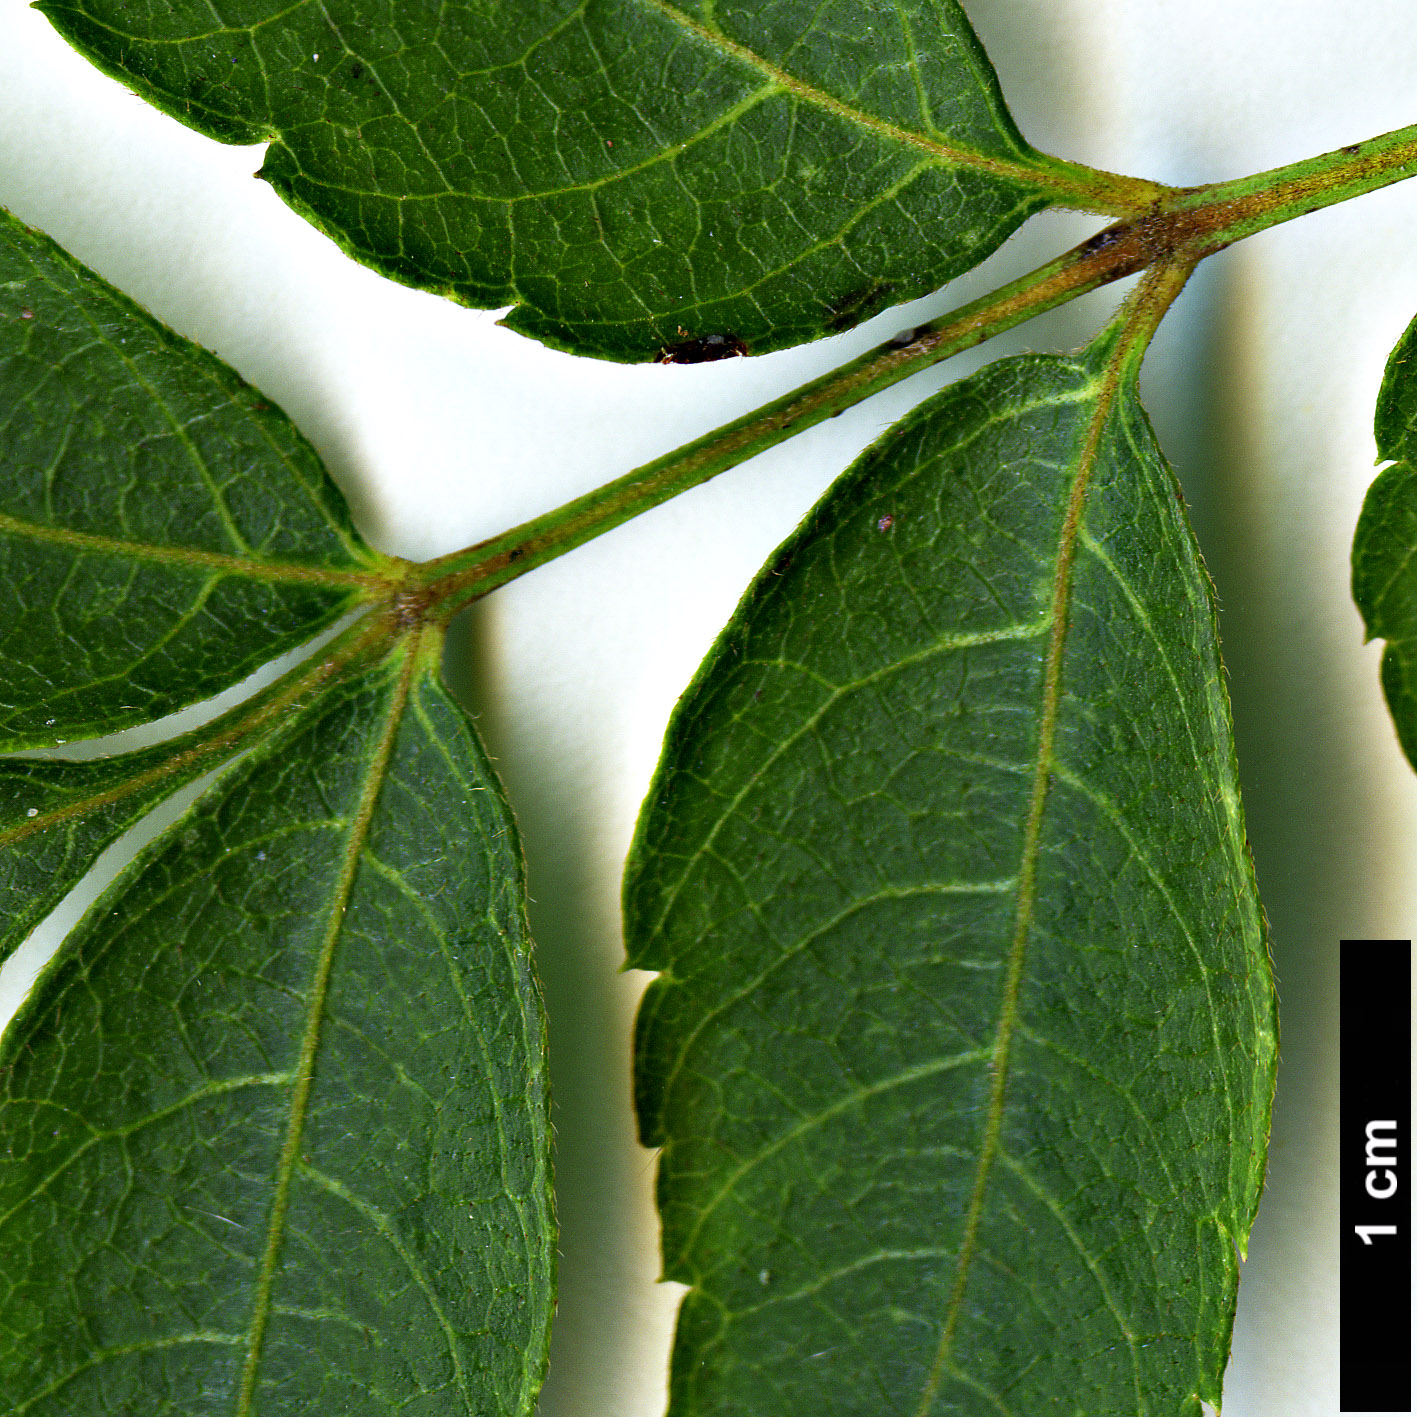 High resolution image: Family: Sapindaceae - Genus: Dipteronia - Taxon: sinensis